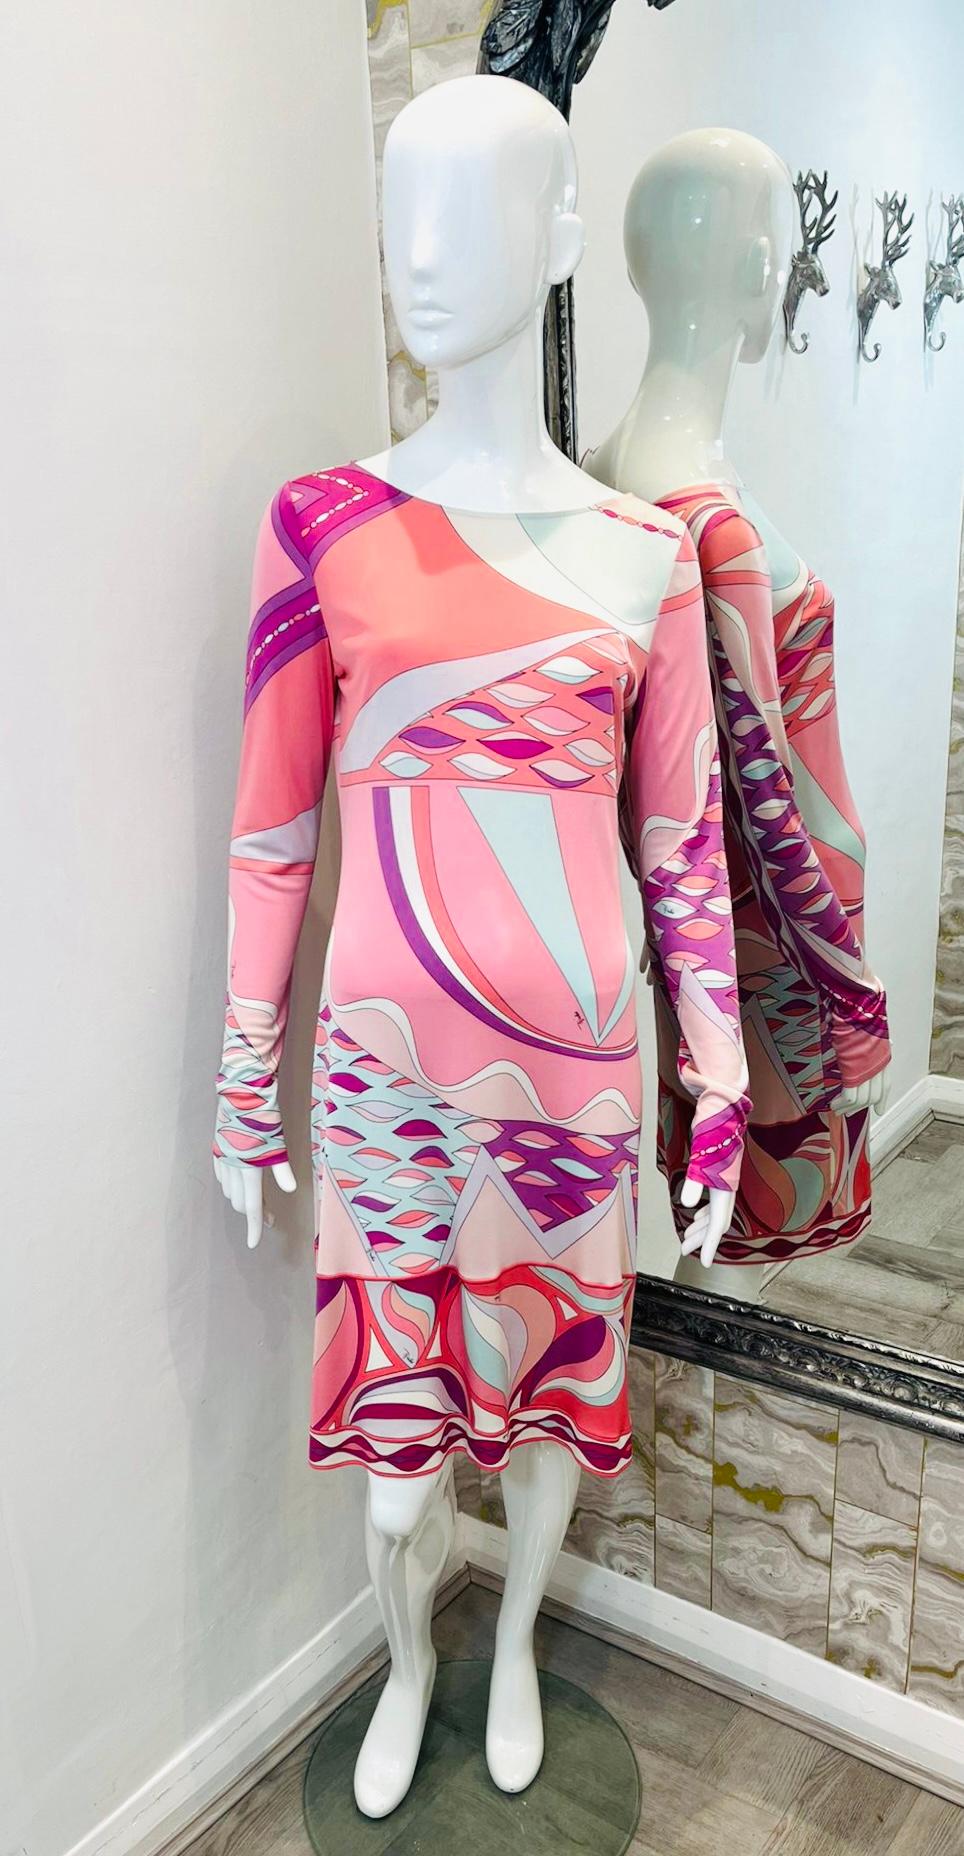 Emilio Pucci - Robe en soie imprimée abstraite

Robe rose à manches longues conçue avec les imprimés abstraits blancs et violets emblématiques de la marque.

Encolure ronde et longueur au-dessus du genou.

Il est doté d'un dos ouvert et d'une